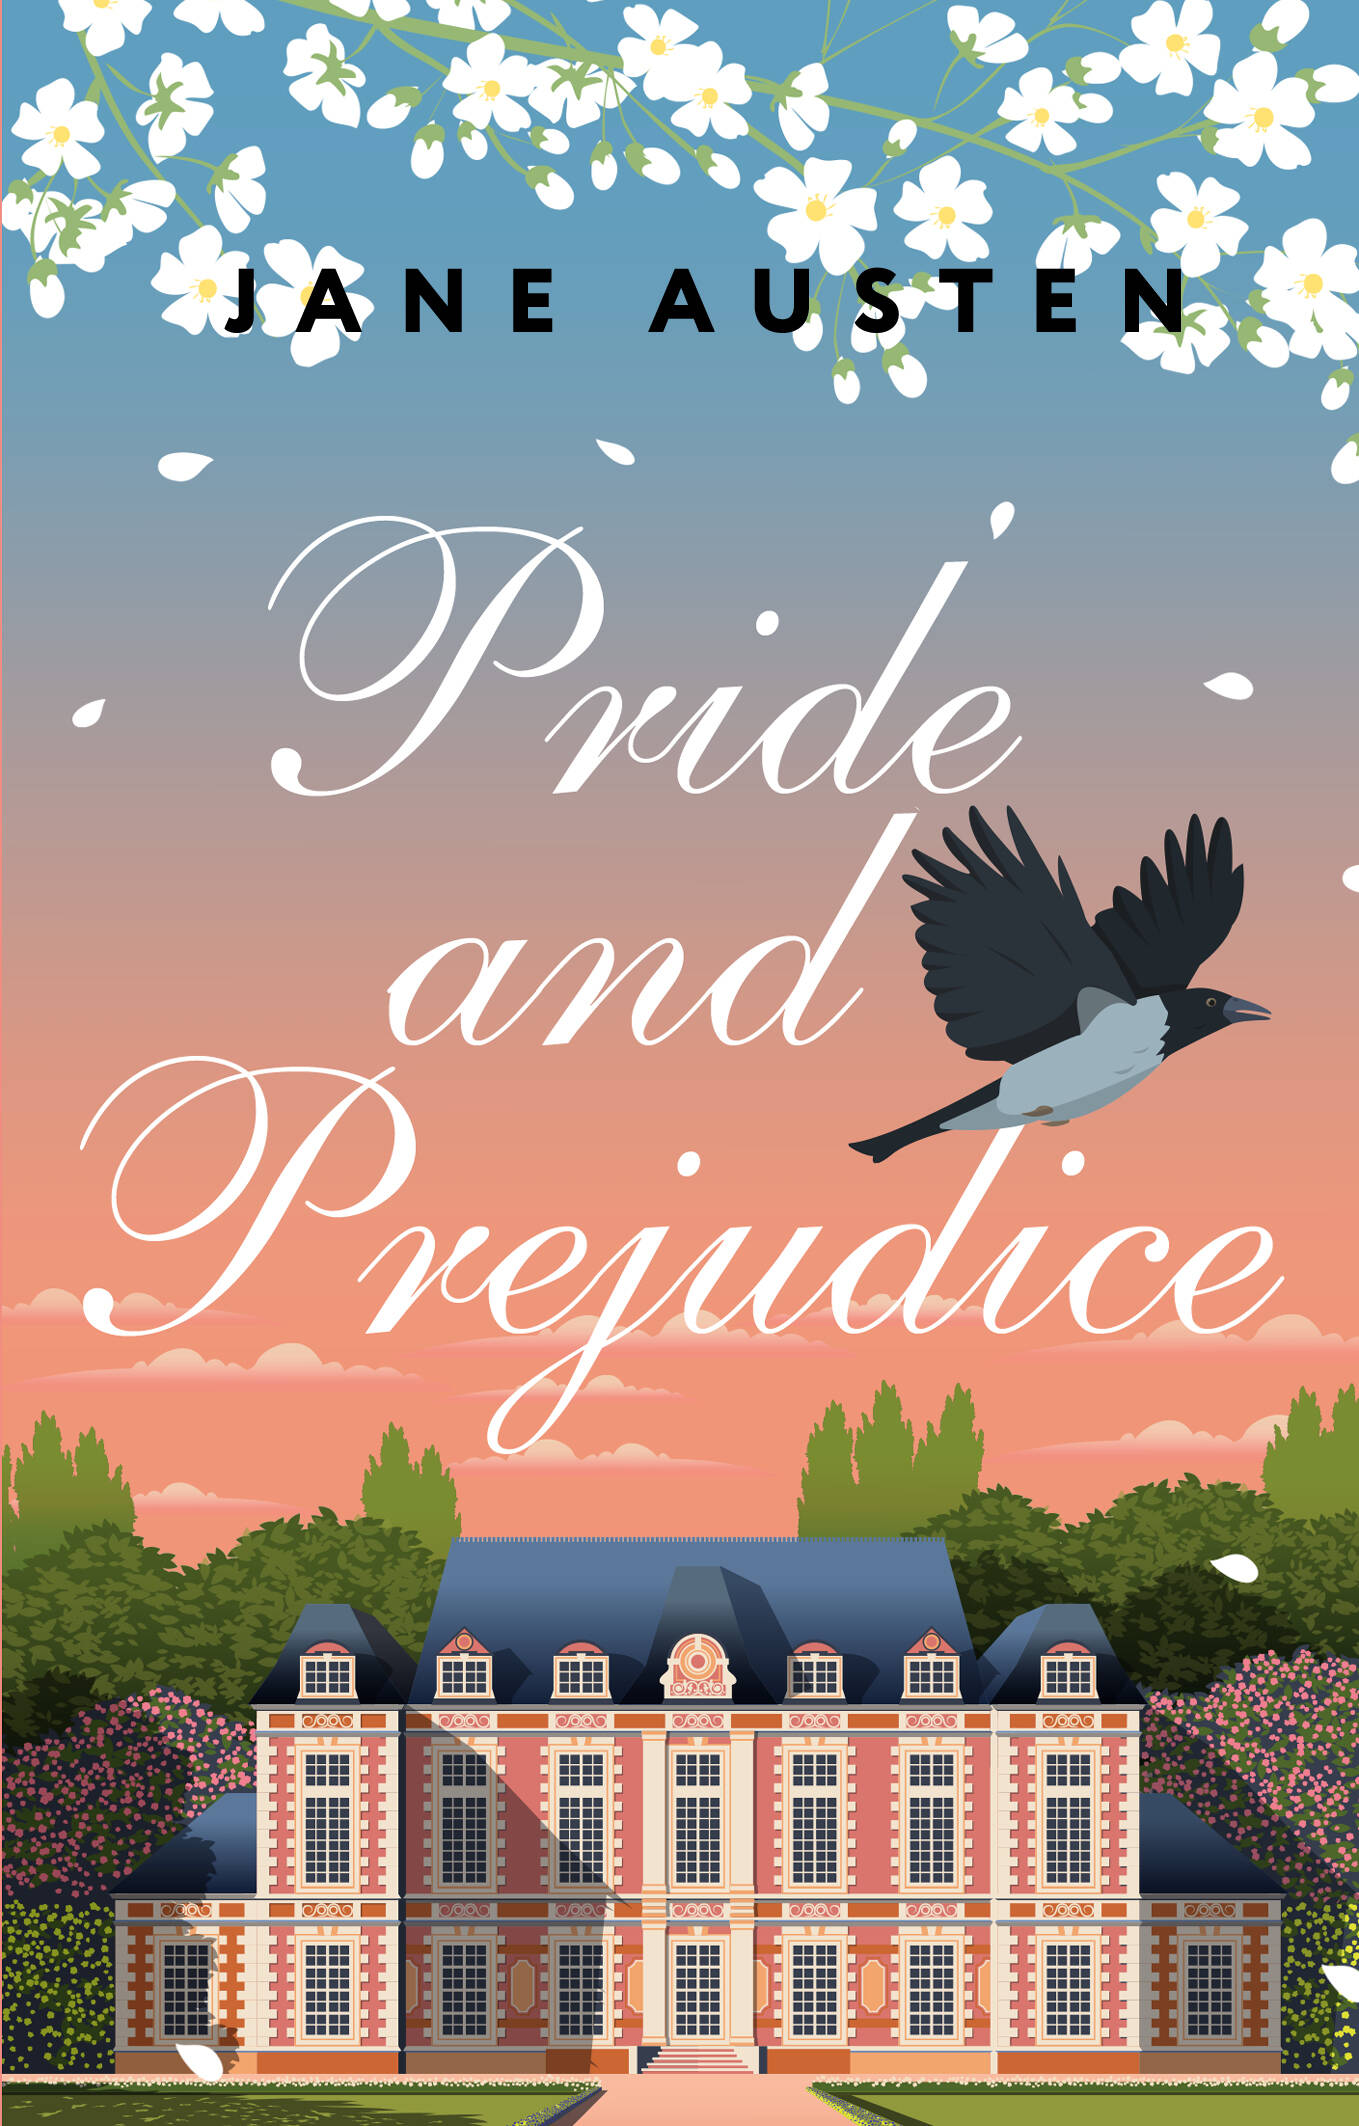 Остен Джейн Pride and Prejudice остен джейн pride and prejudice на английском языке